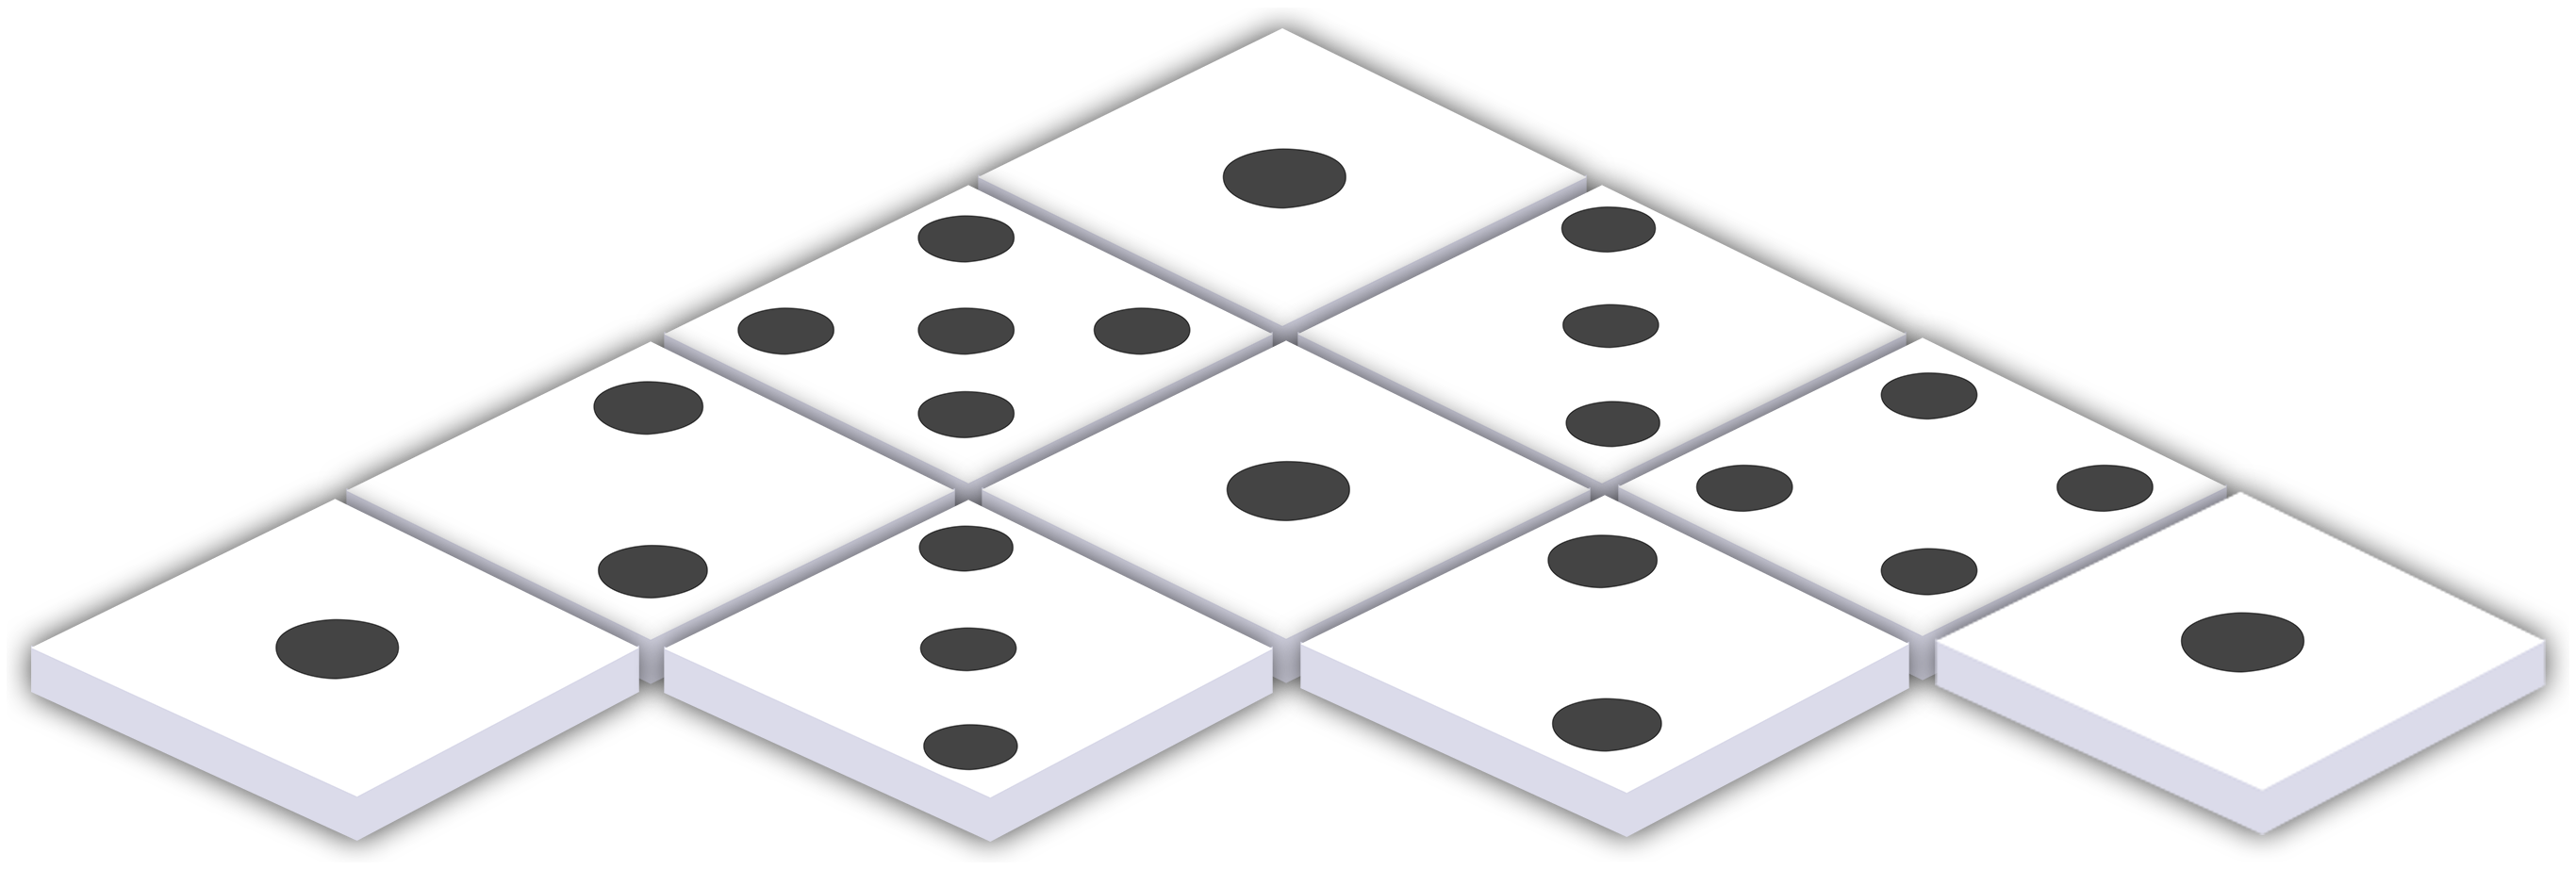 domino clipart board game